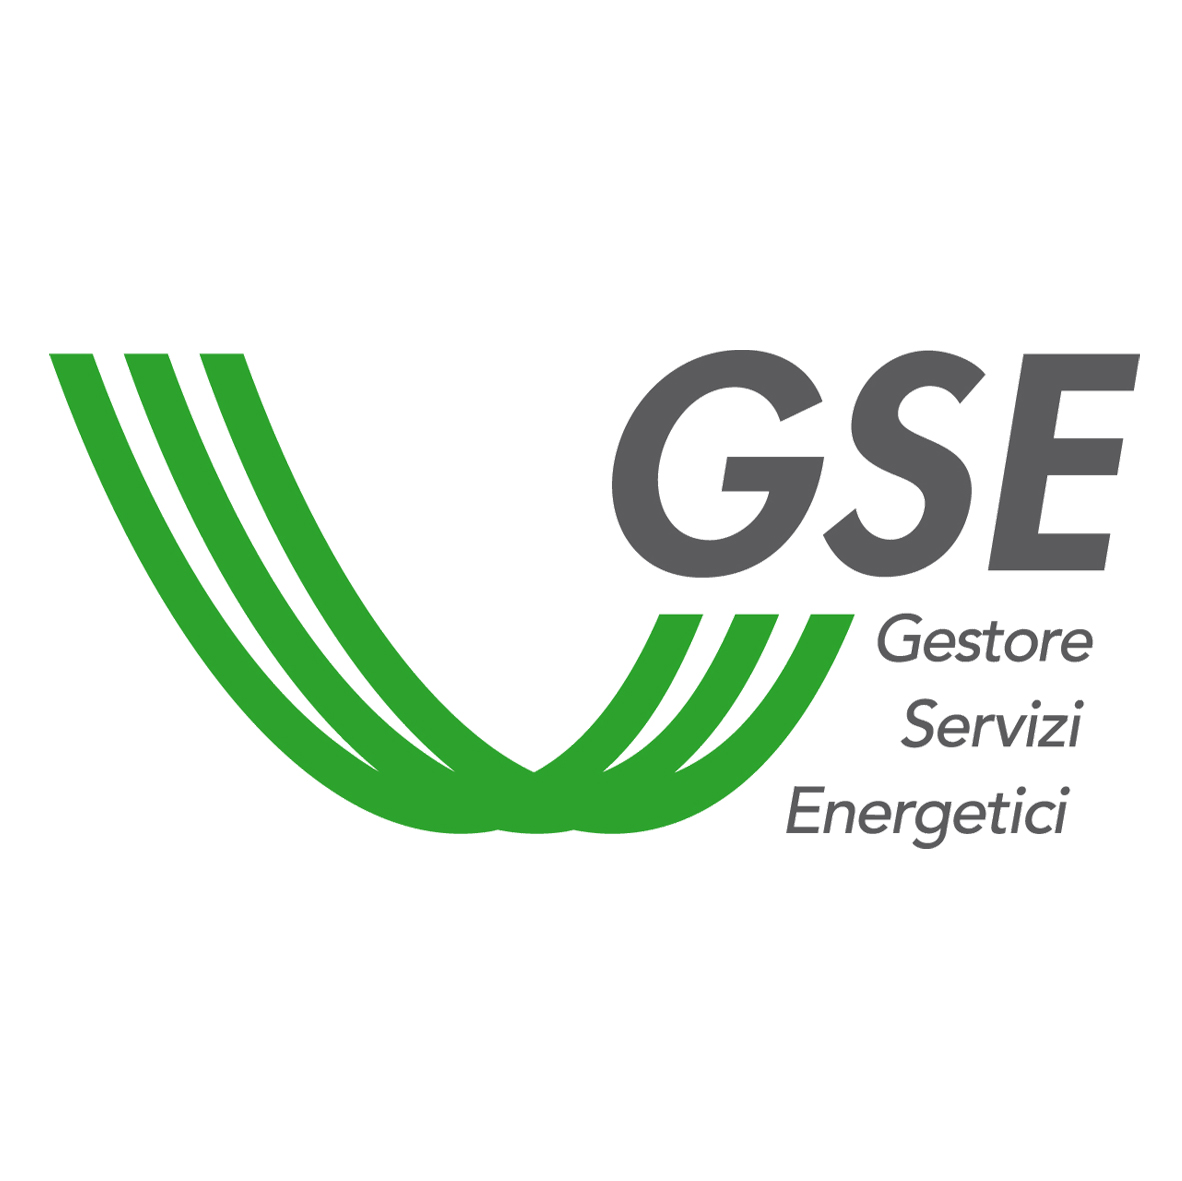 Джестор. ГСЕ. Gestore. GSE бренд. IPEX логотип.